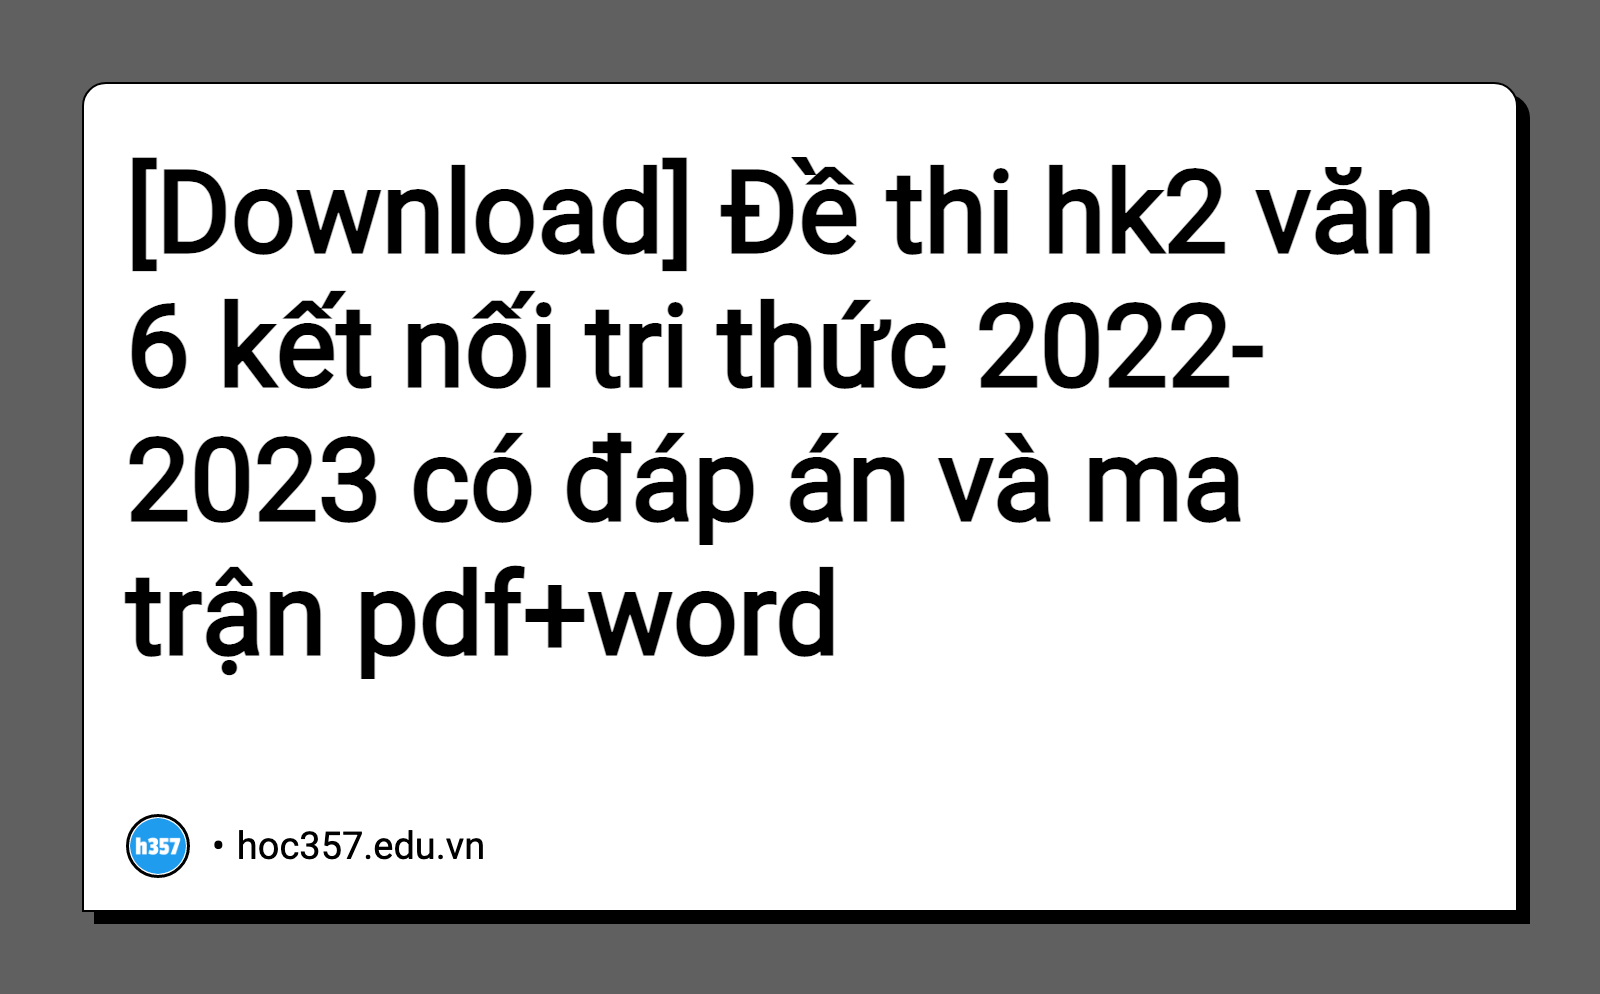 Hình minh họa Đề thi hk2 văn 6 kết nối tri thức 2022-2023 có đáp án và ma trận